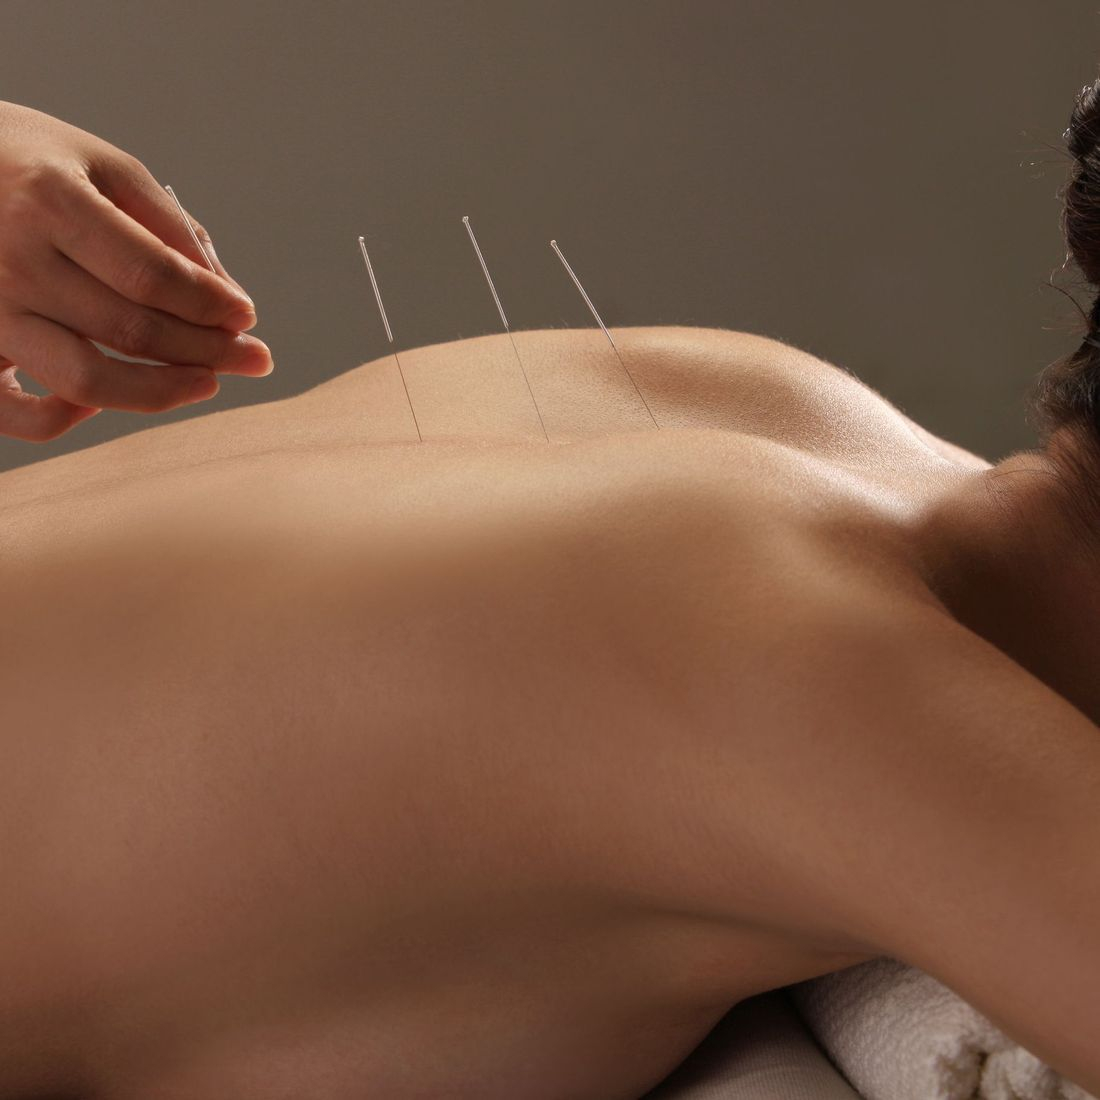 ispolzovanie akupunktury dlya uluchsheniya zdorovya